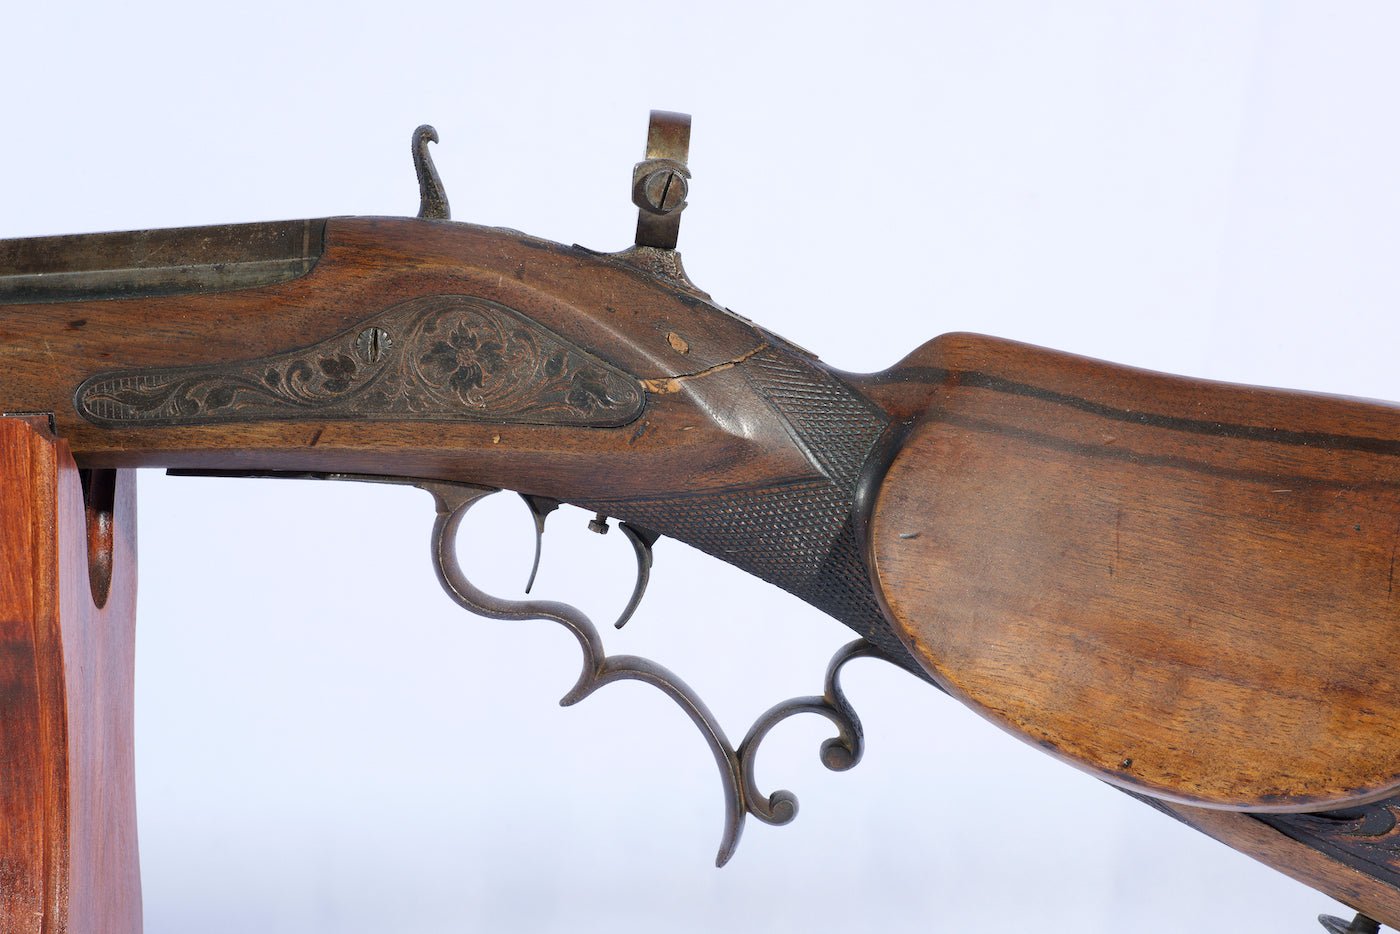 Ornate Schuetzen Rifle - 1870 22 cal (with a full octagan barrel) German "castle" gun